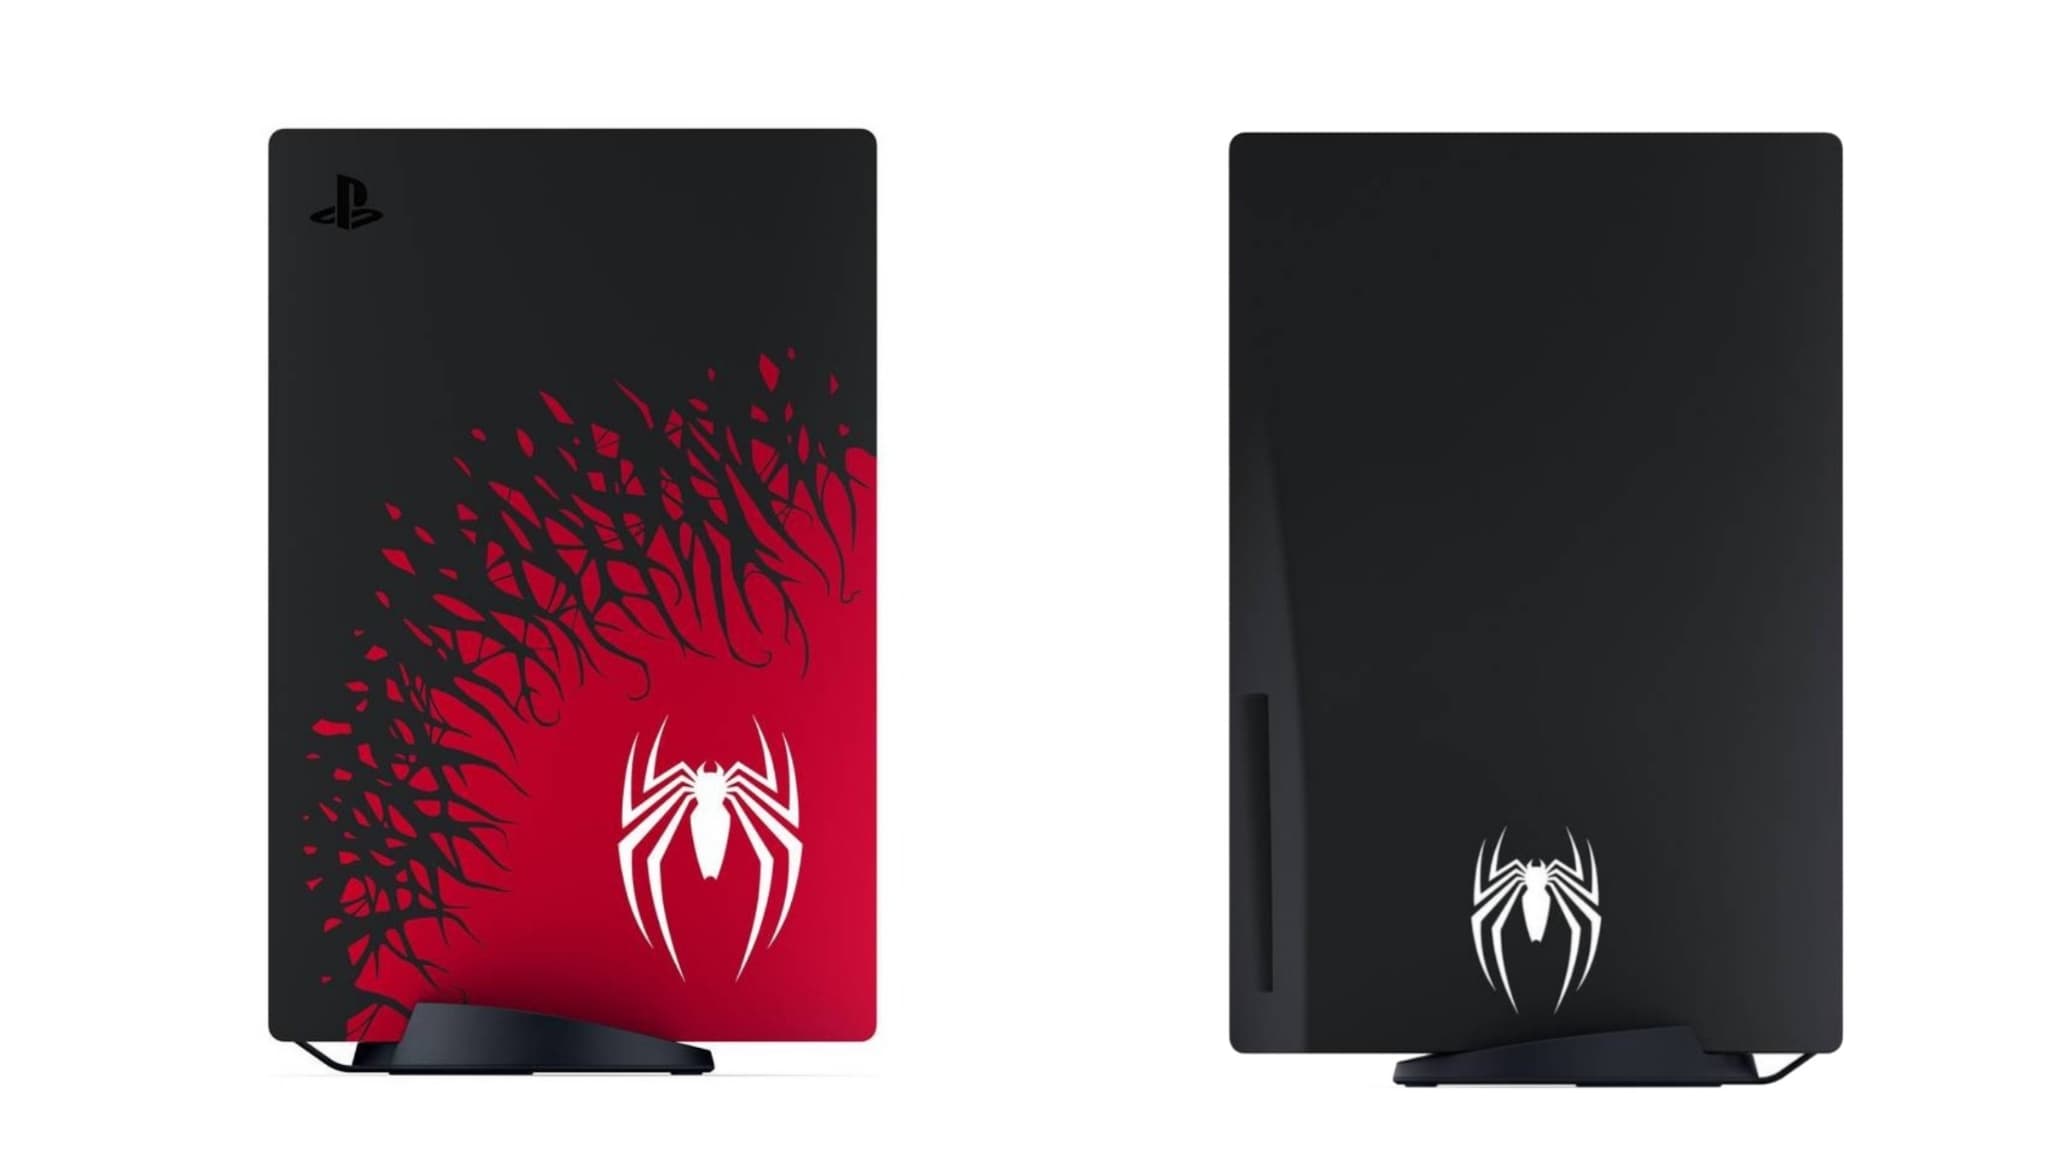 Spider-Man 2 s'offre un nouveau trailer et une console PS5